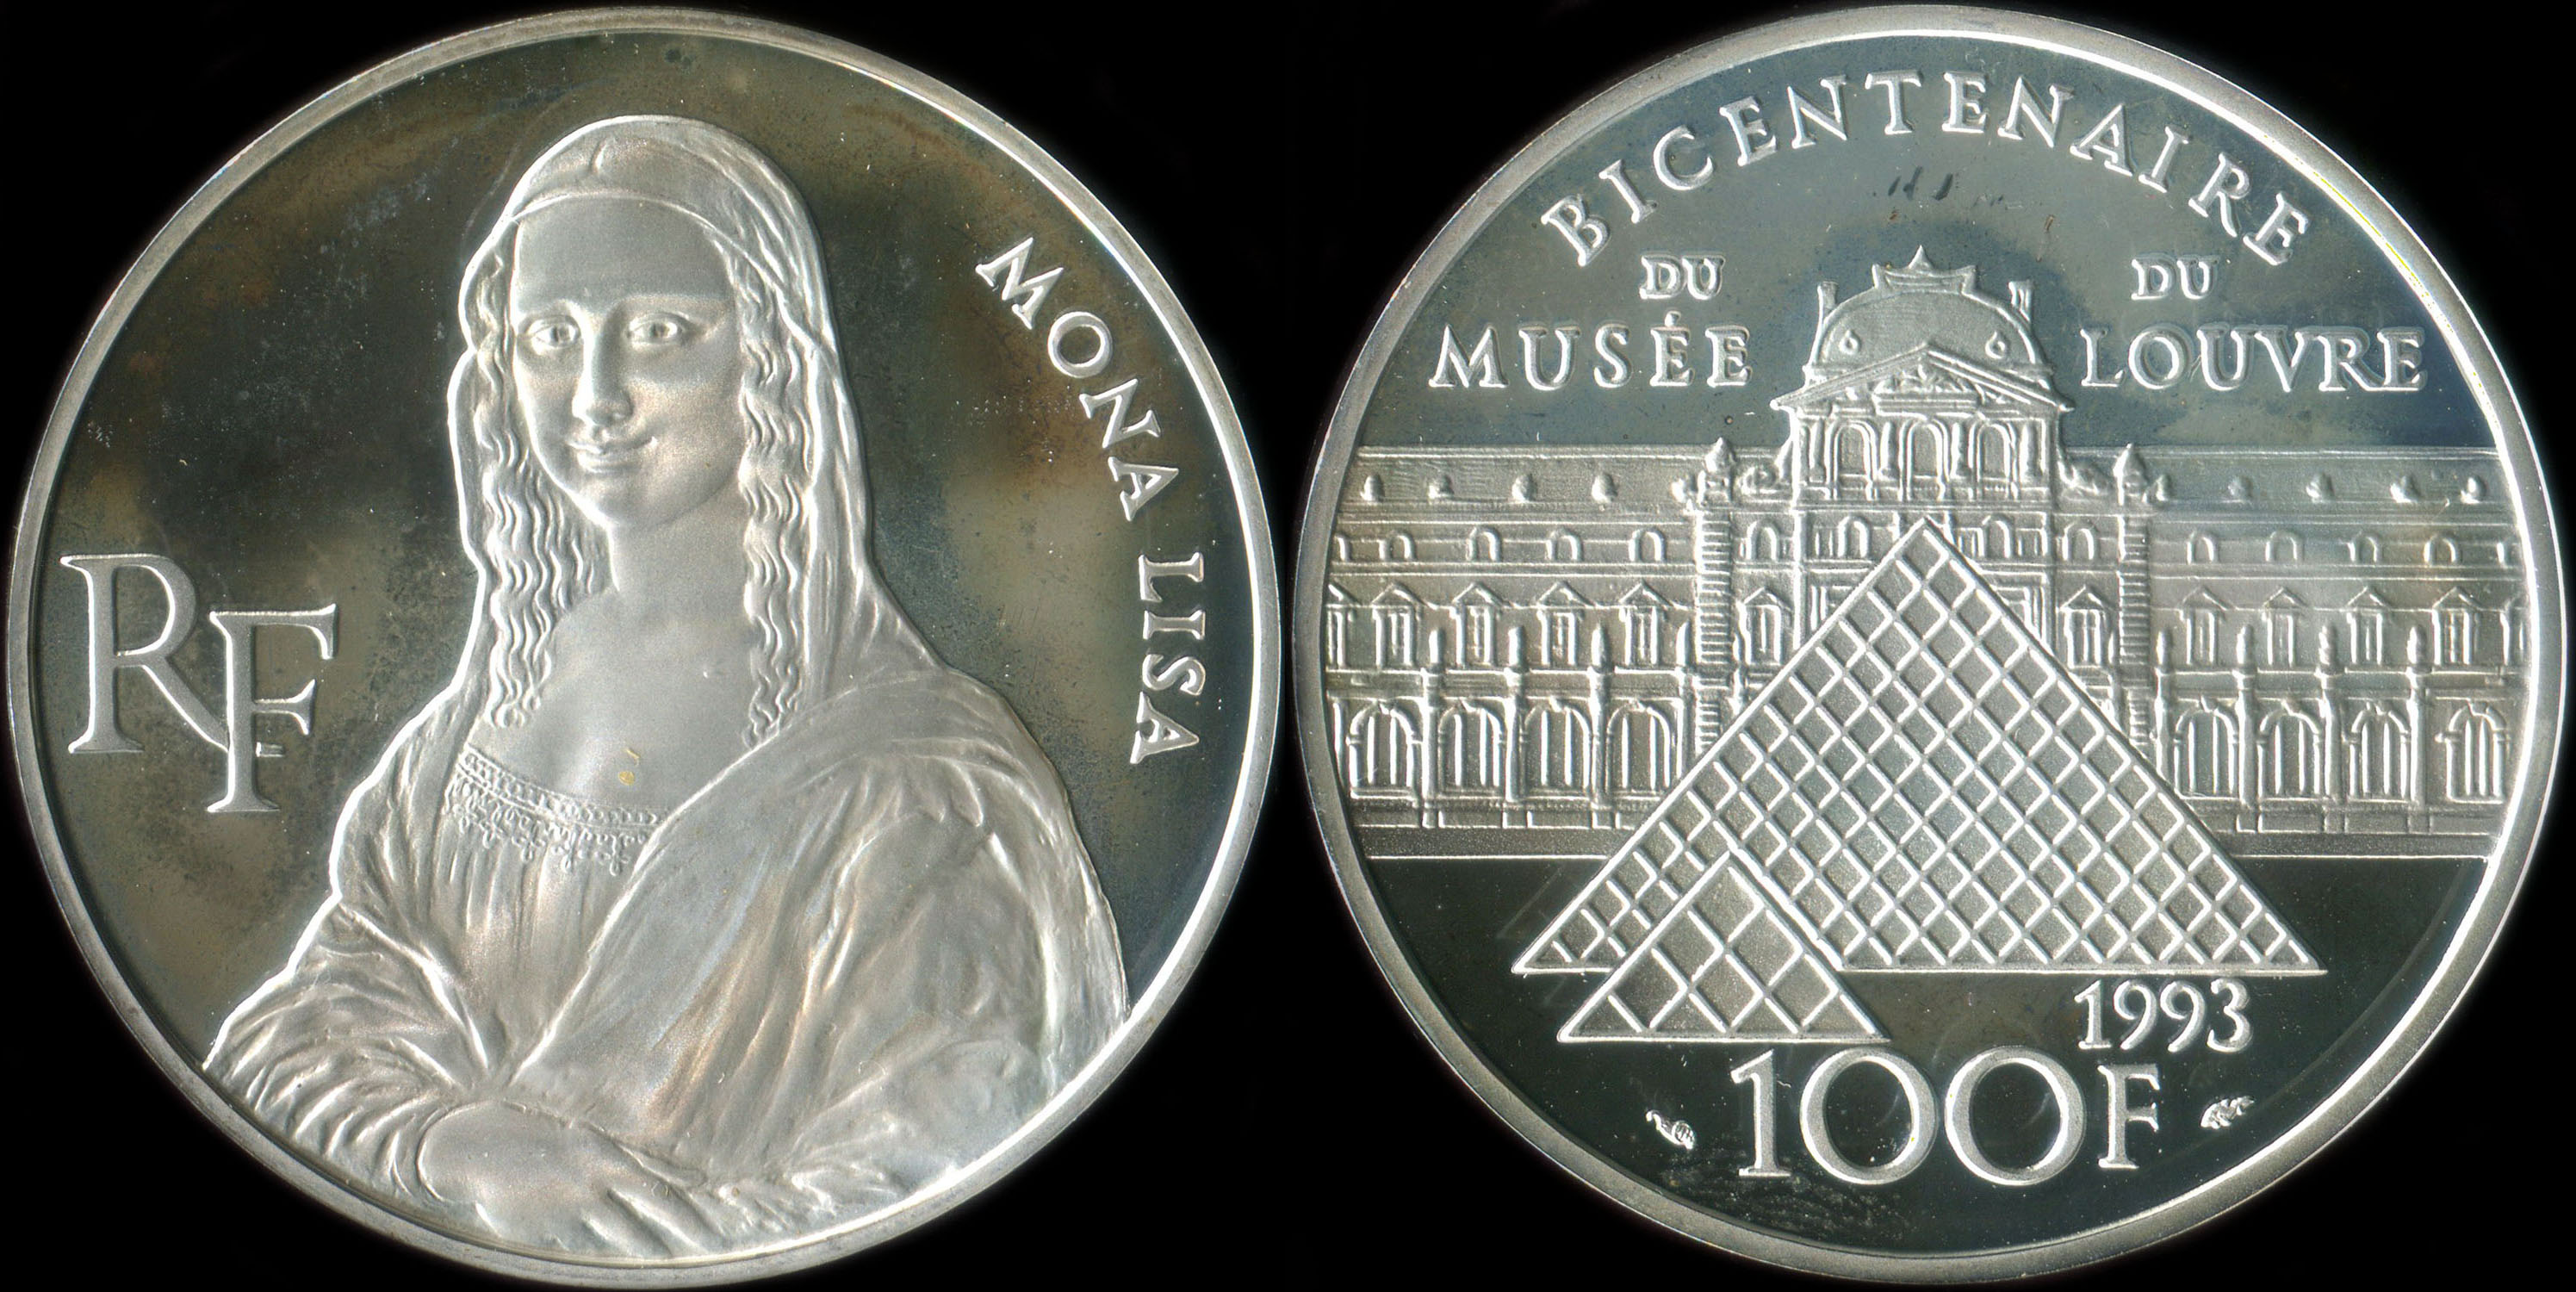 Pice de 100 francs 1993 - Bicentenaire du Muse du Louvre - Mona Lisa